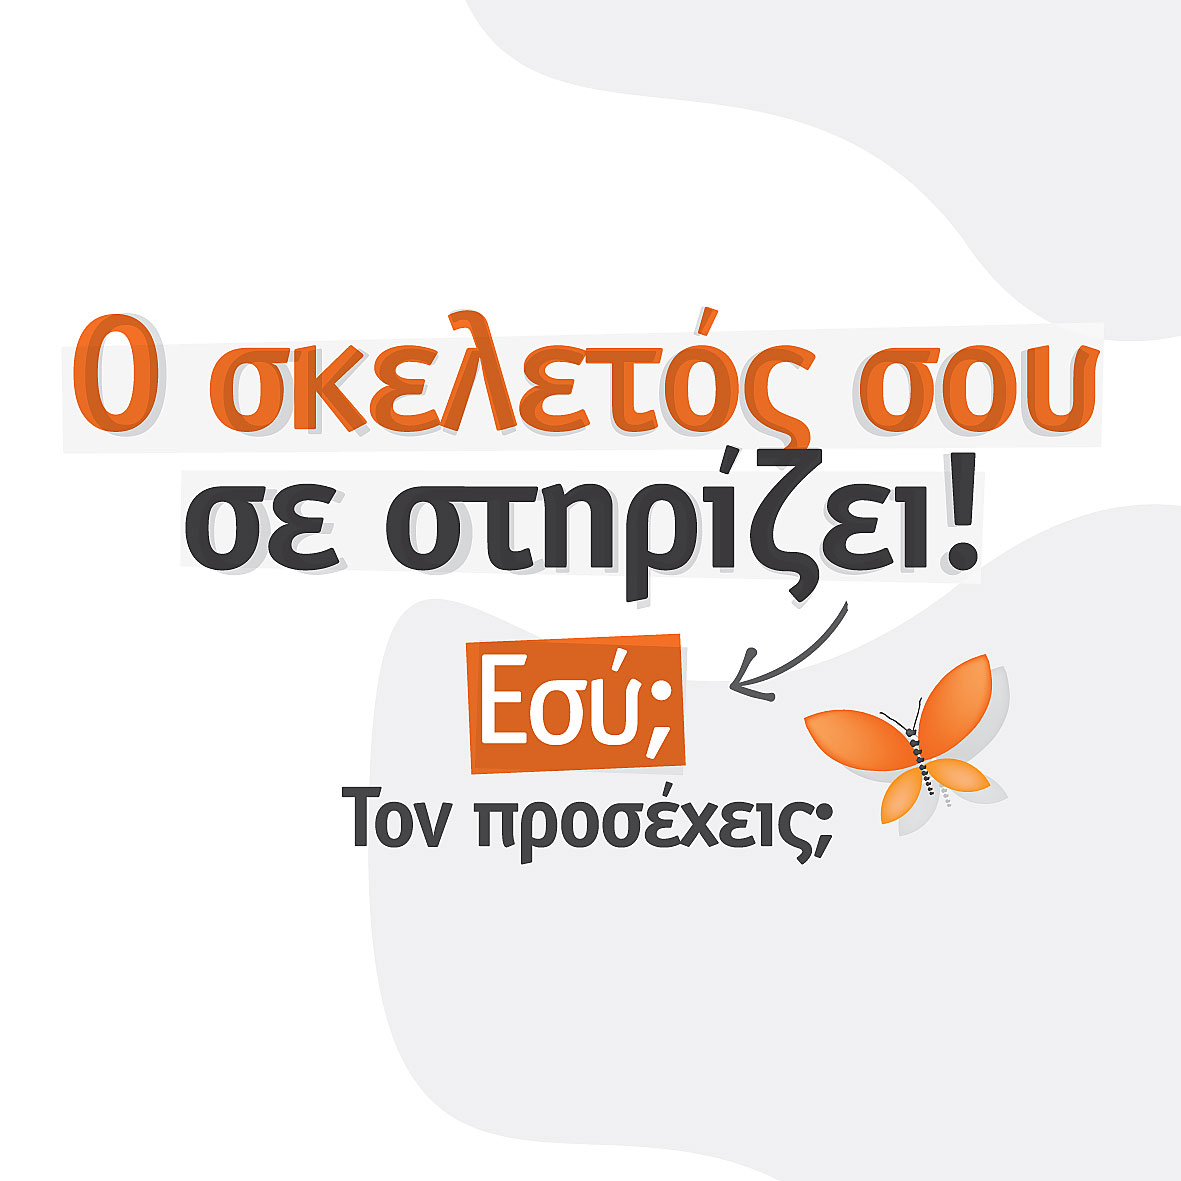 Δωρεάν εξετάσεις και ομιλίες για την οστεοπόρωση σε όλη την Ελλάδα